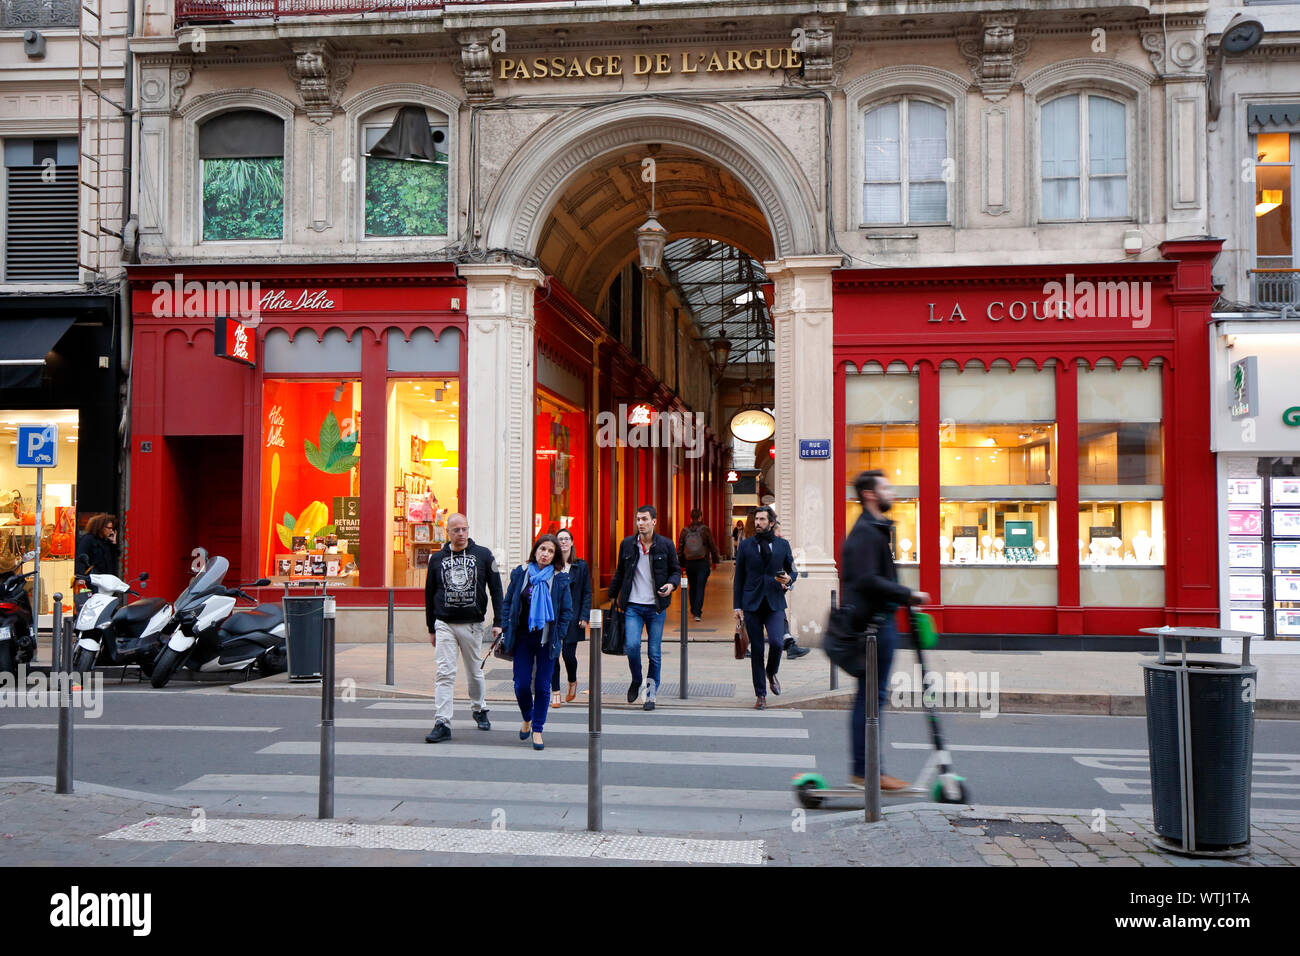 Passage de l'argumentan, Rue de Brest entrada, Lyon, Francia. Foto de stock